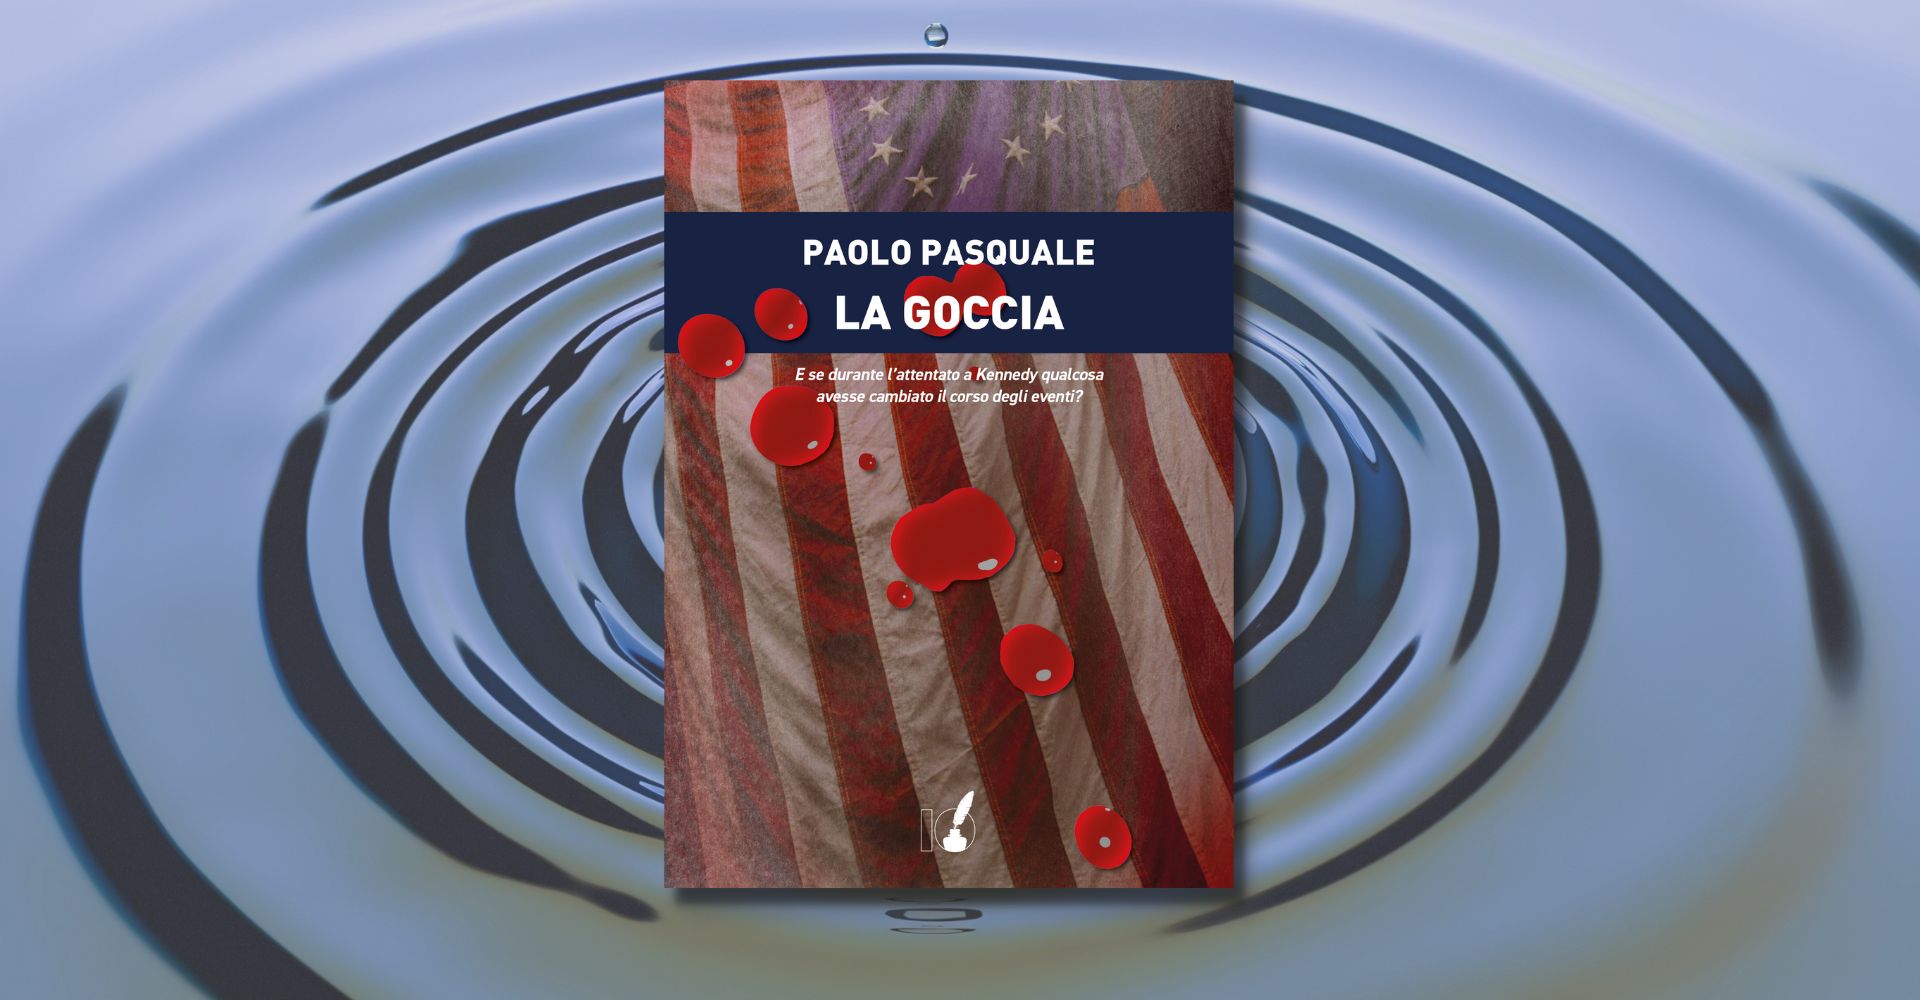 Paolo Pasquale La goccia Ioscrittore